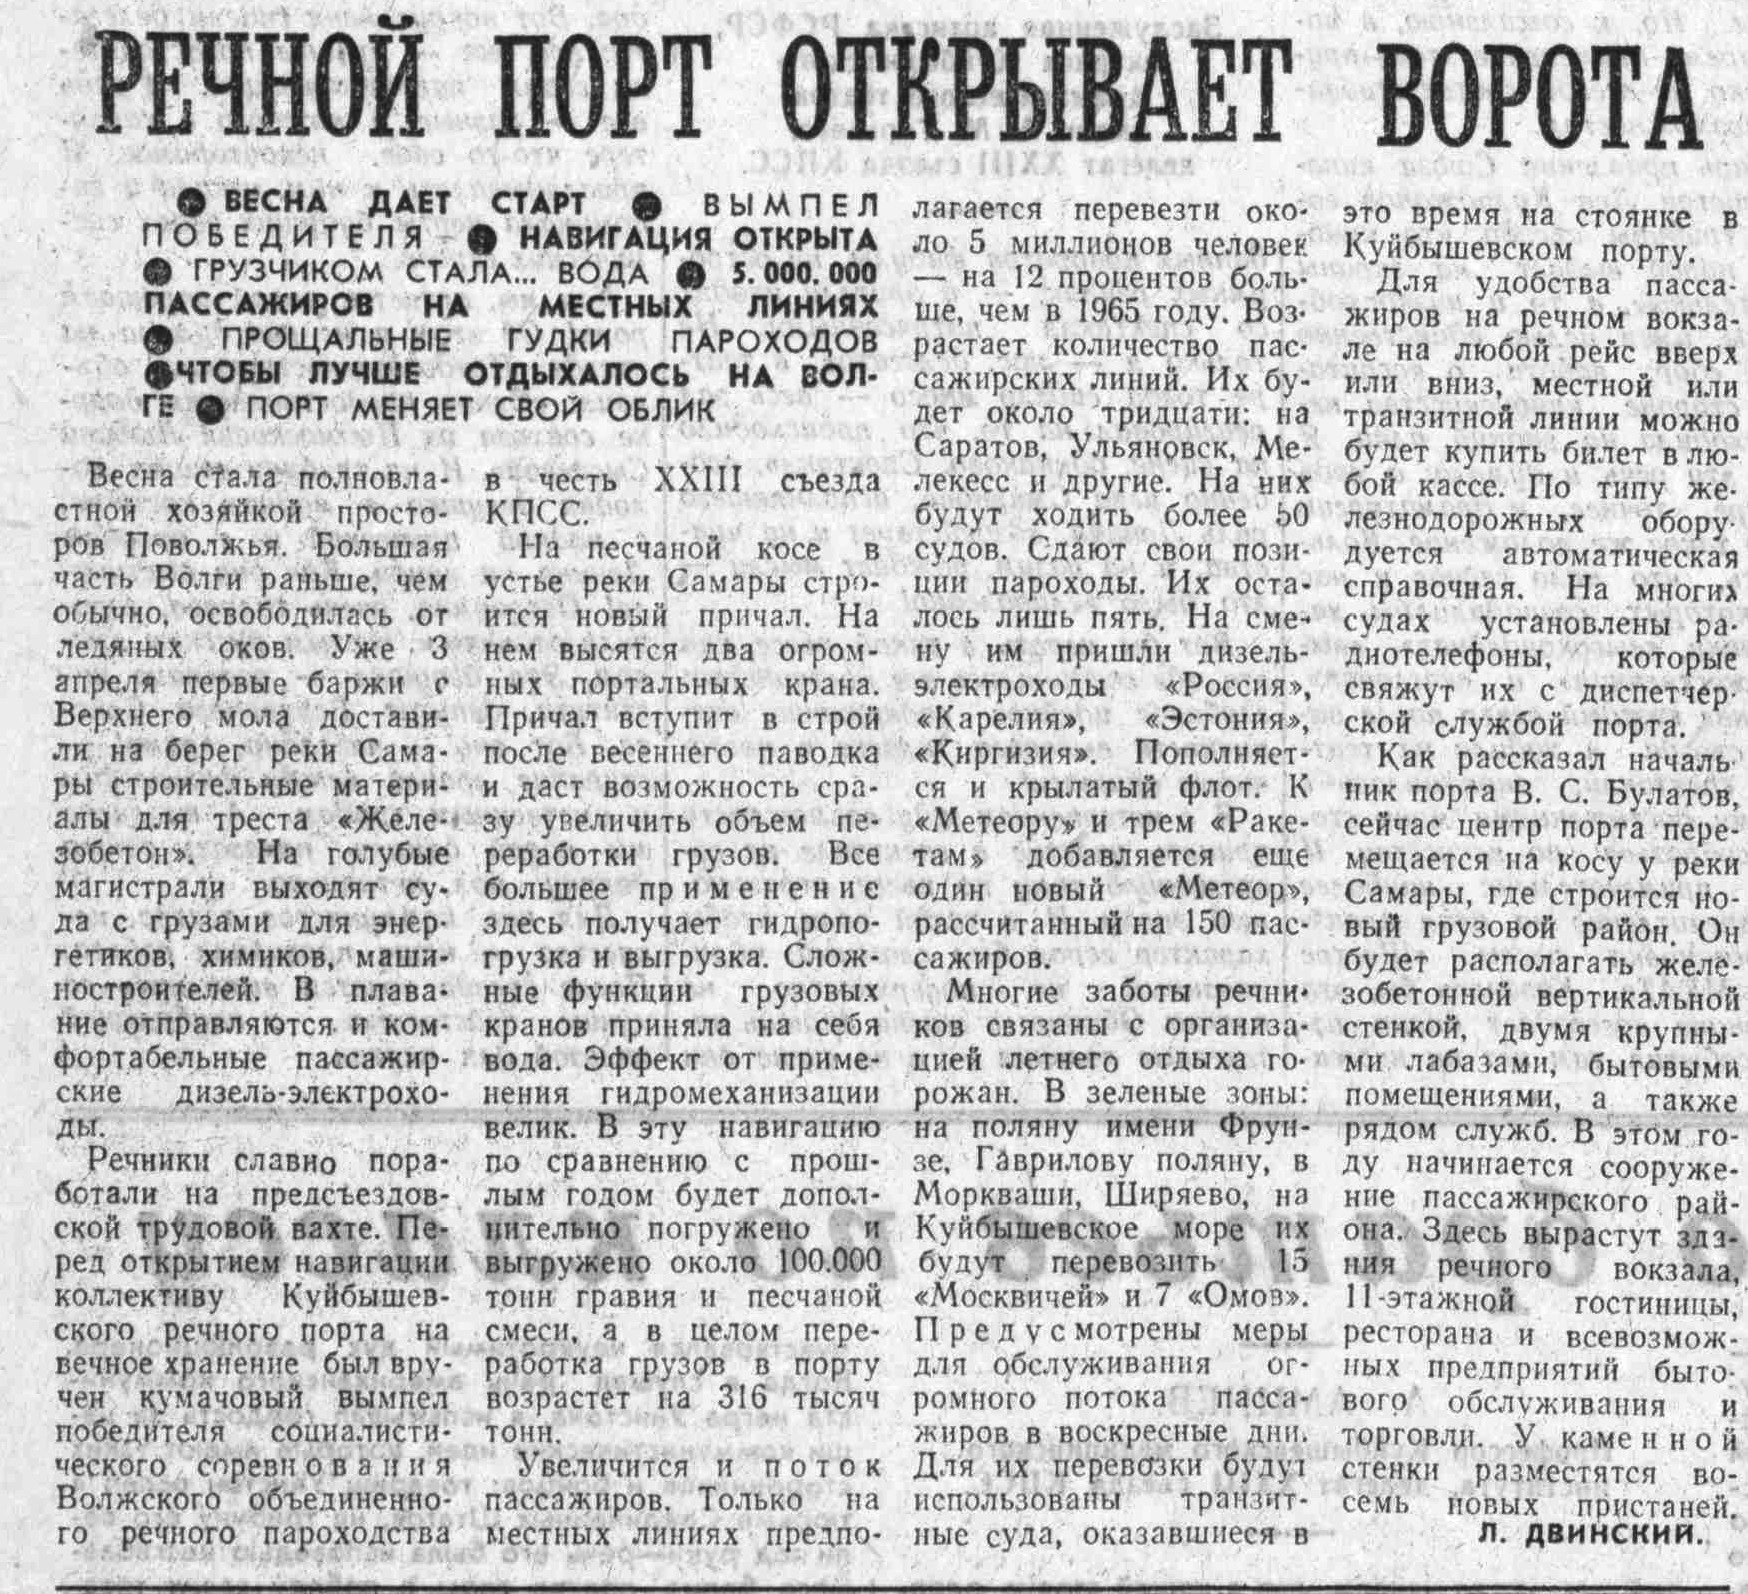 Стрелка реки Самары-ФОТО-13-ВКа-1966-04-13-новости речпорта